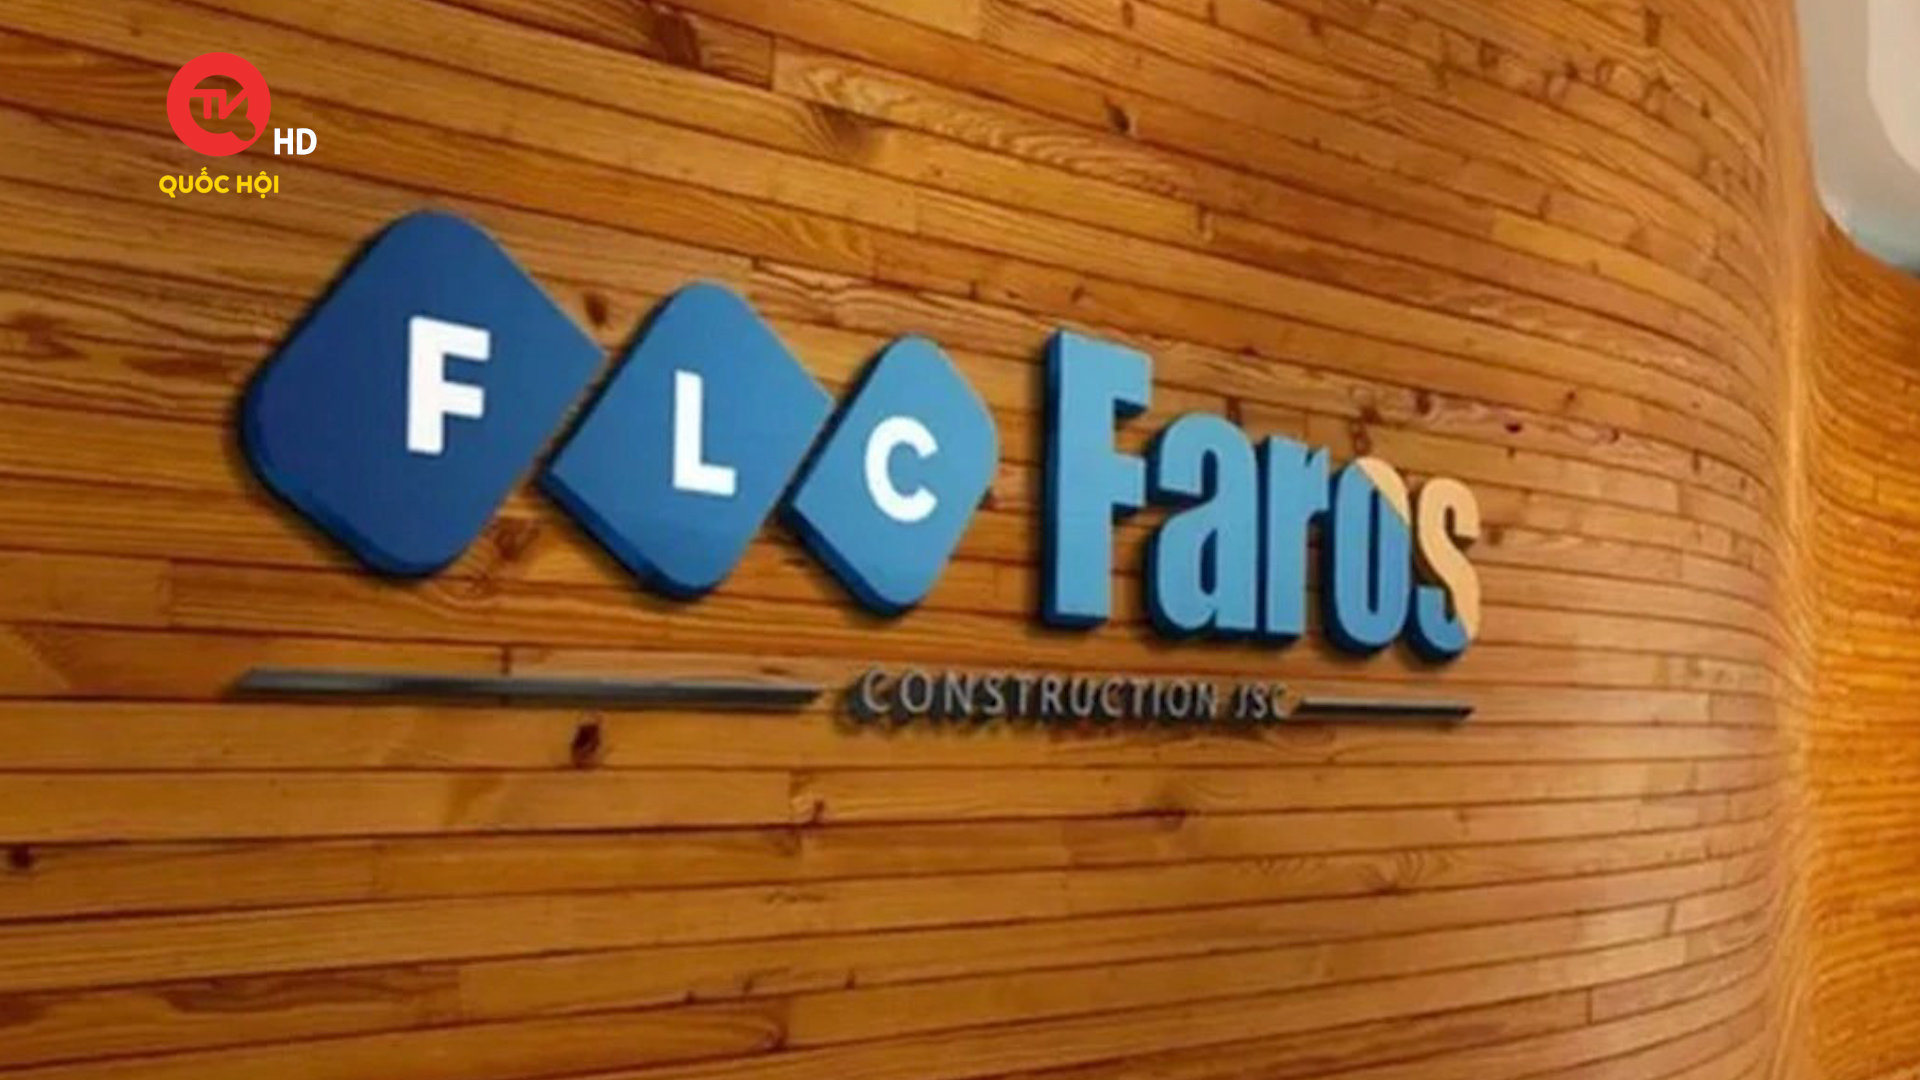 FLC Faros - cổ phiếu đầu tiên của FLC bị hủy niêm yết